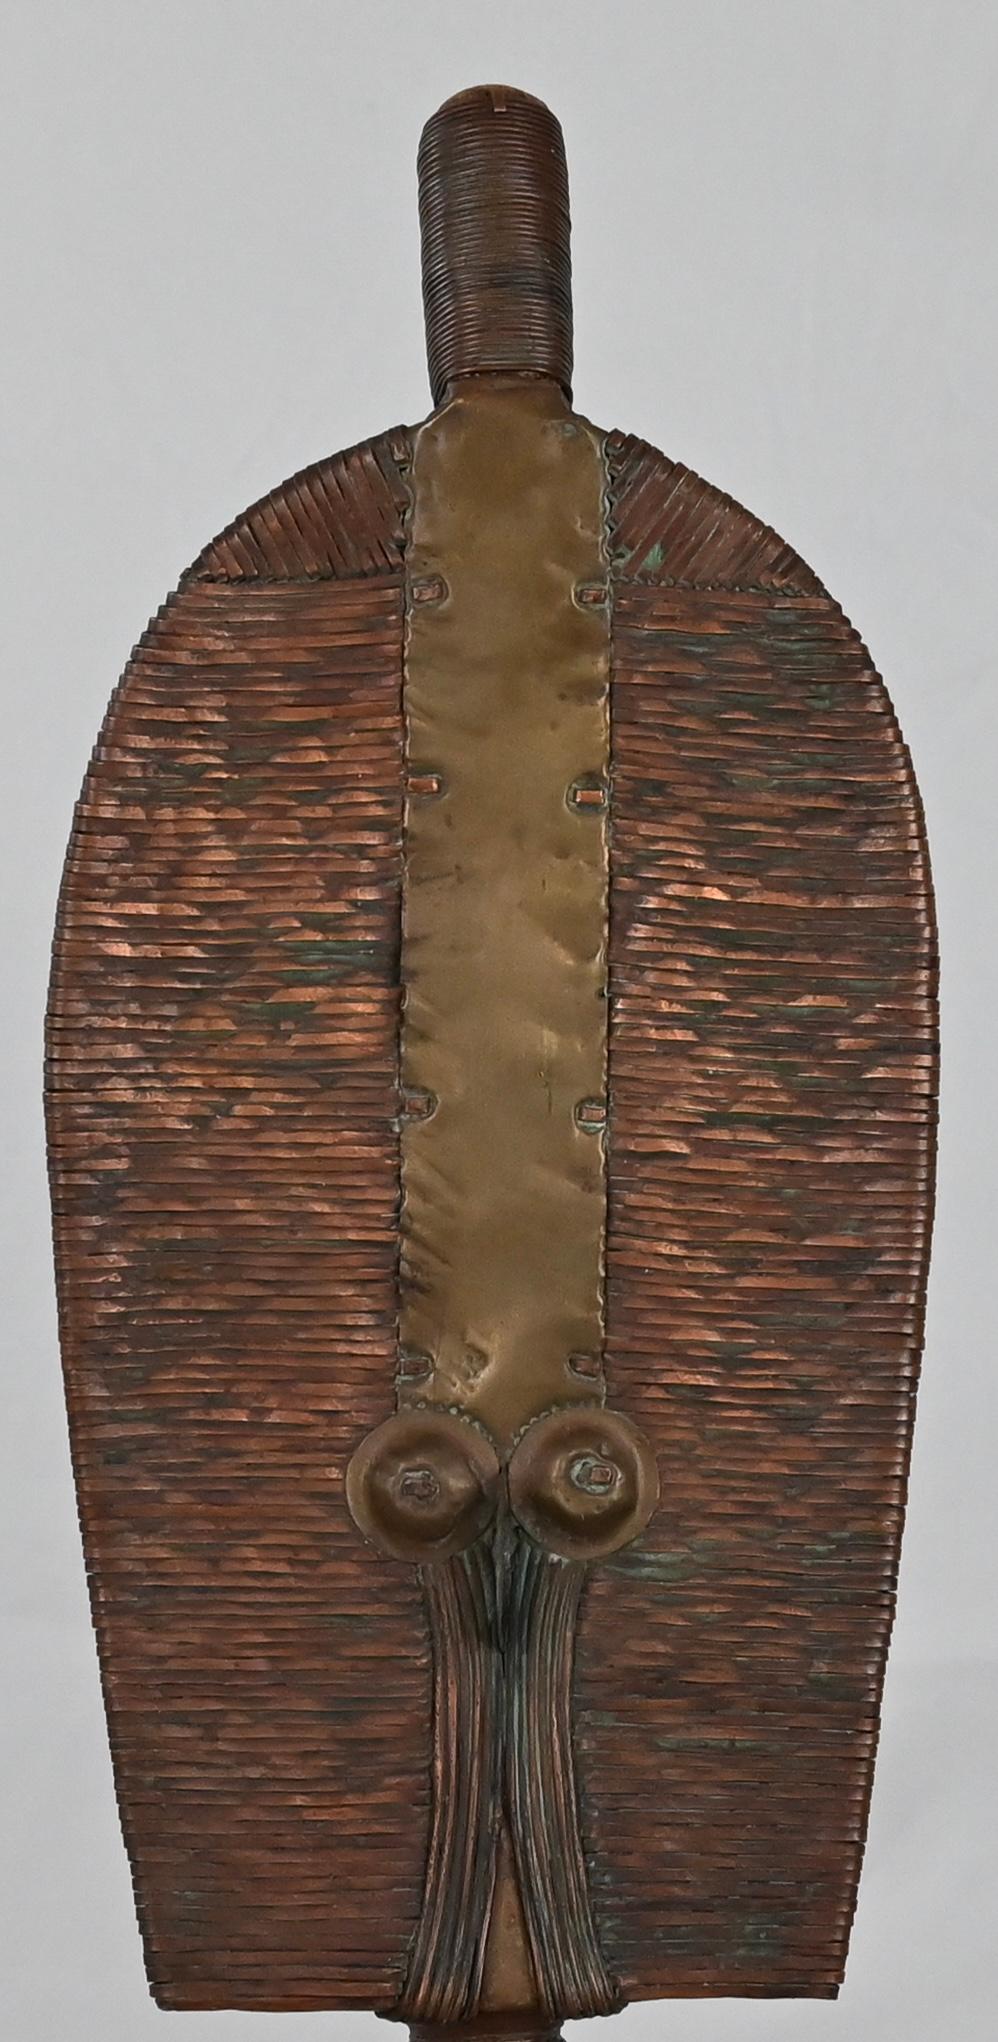 Un fantastico pezzo realizzato a mano dalla tribù Kota (o Bakota) che si trova nella regione nord-orientale del Gabon. Questa figura, che è un reliquiario Mahongwe come mostra il suo volto a forma di mandorla tronca, è realizzata in rame avvolto,